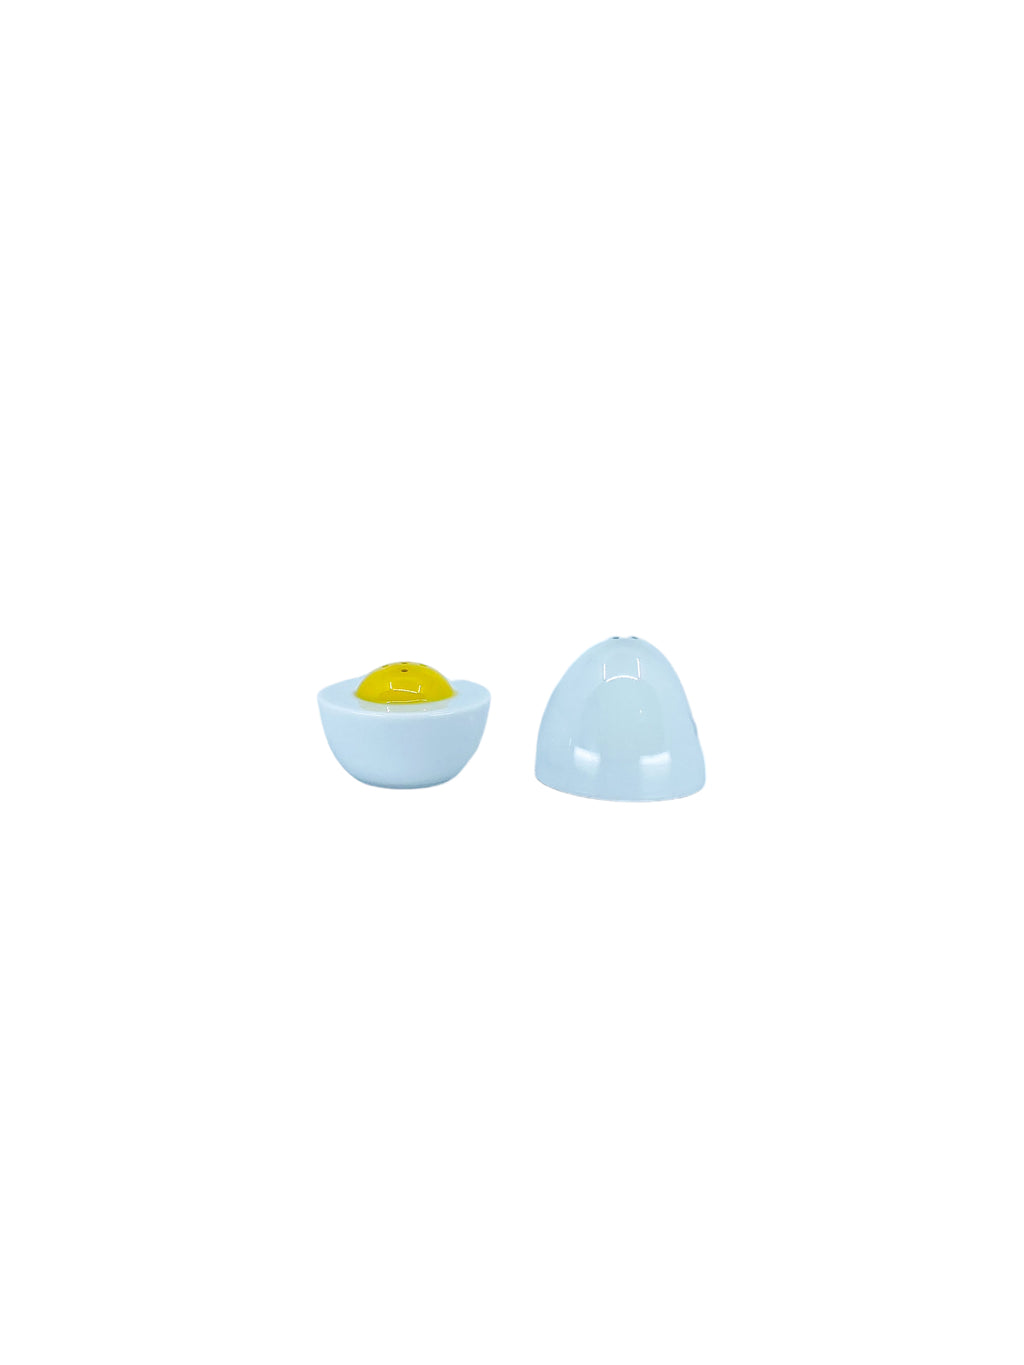 Vintage Avon Ceramic Egg Salt & Pepper Shaker